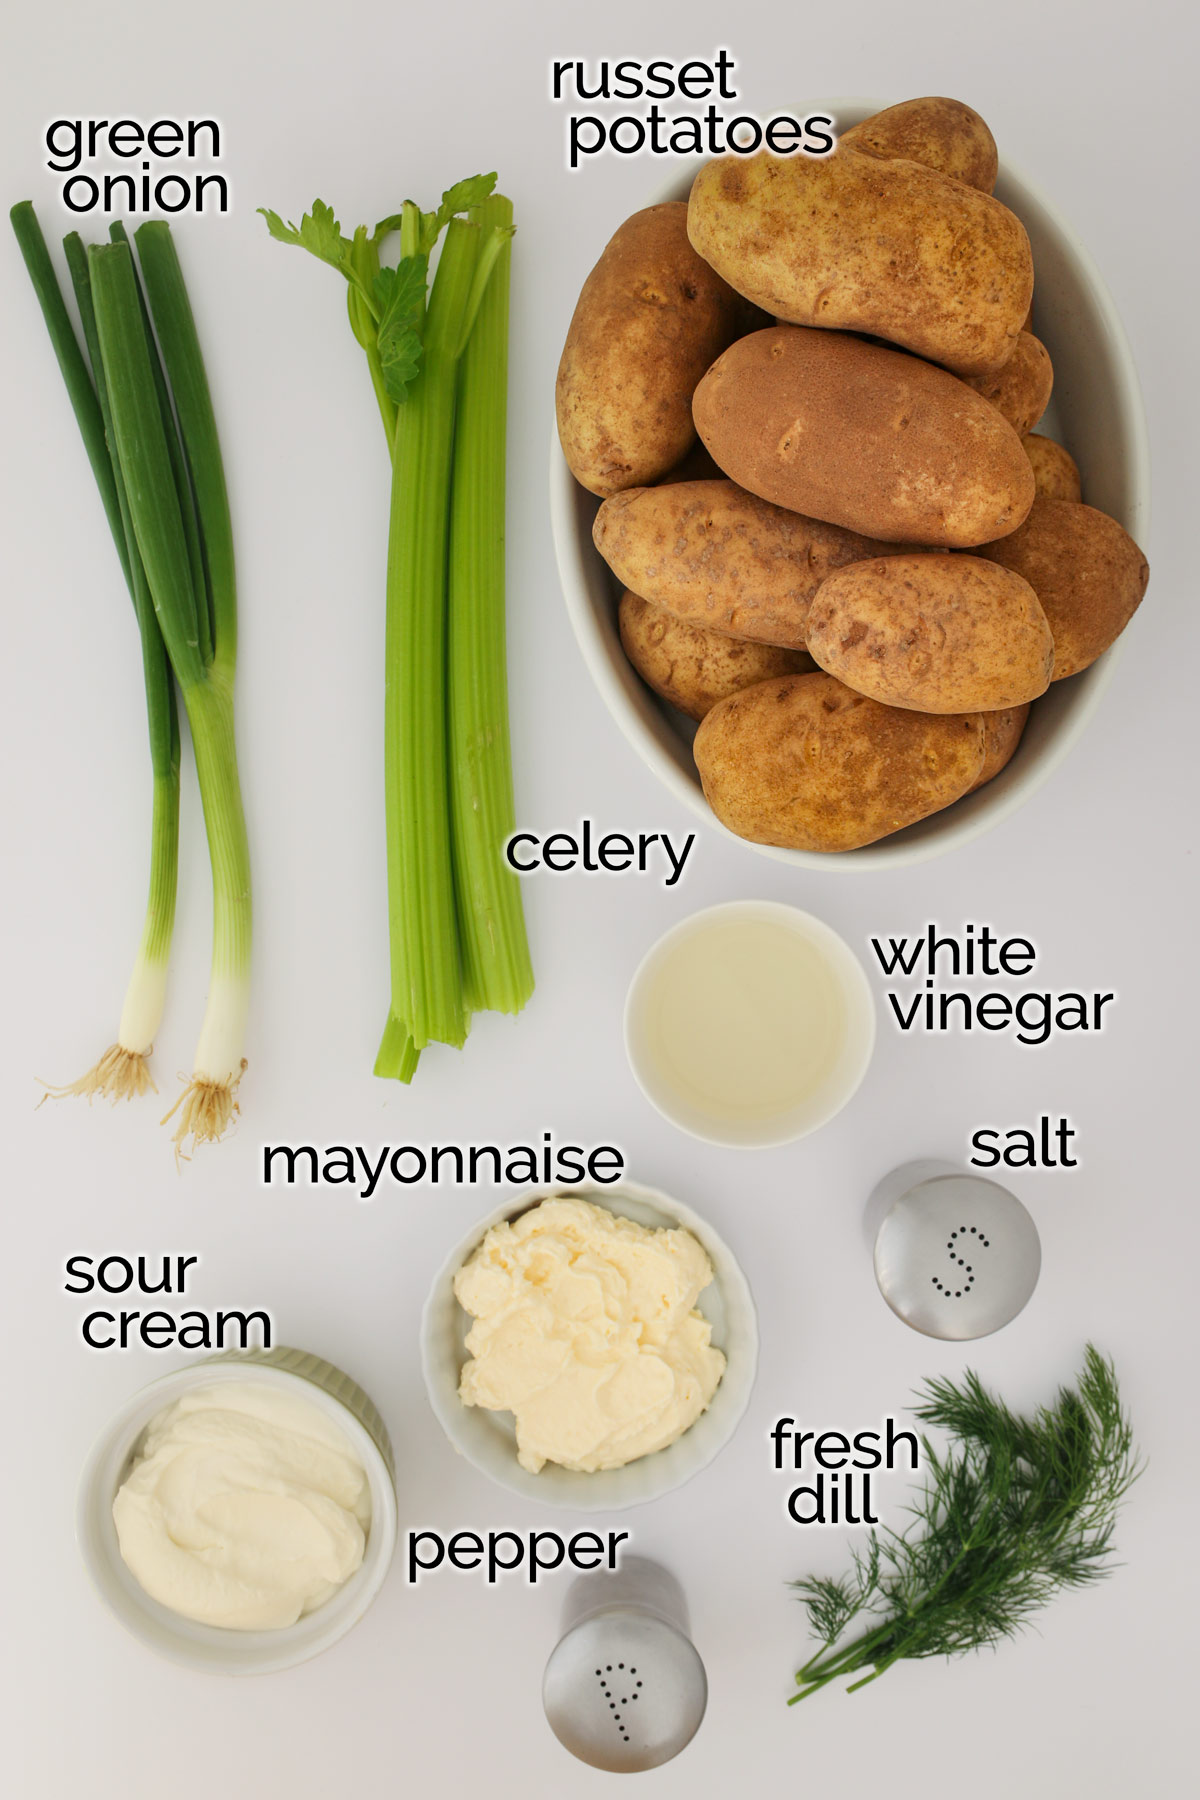 składniki sałatki ziemniaczanej z koperkiem ułożone na białym blacie.